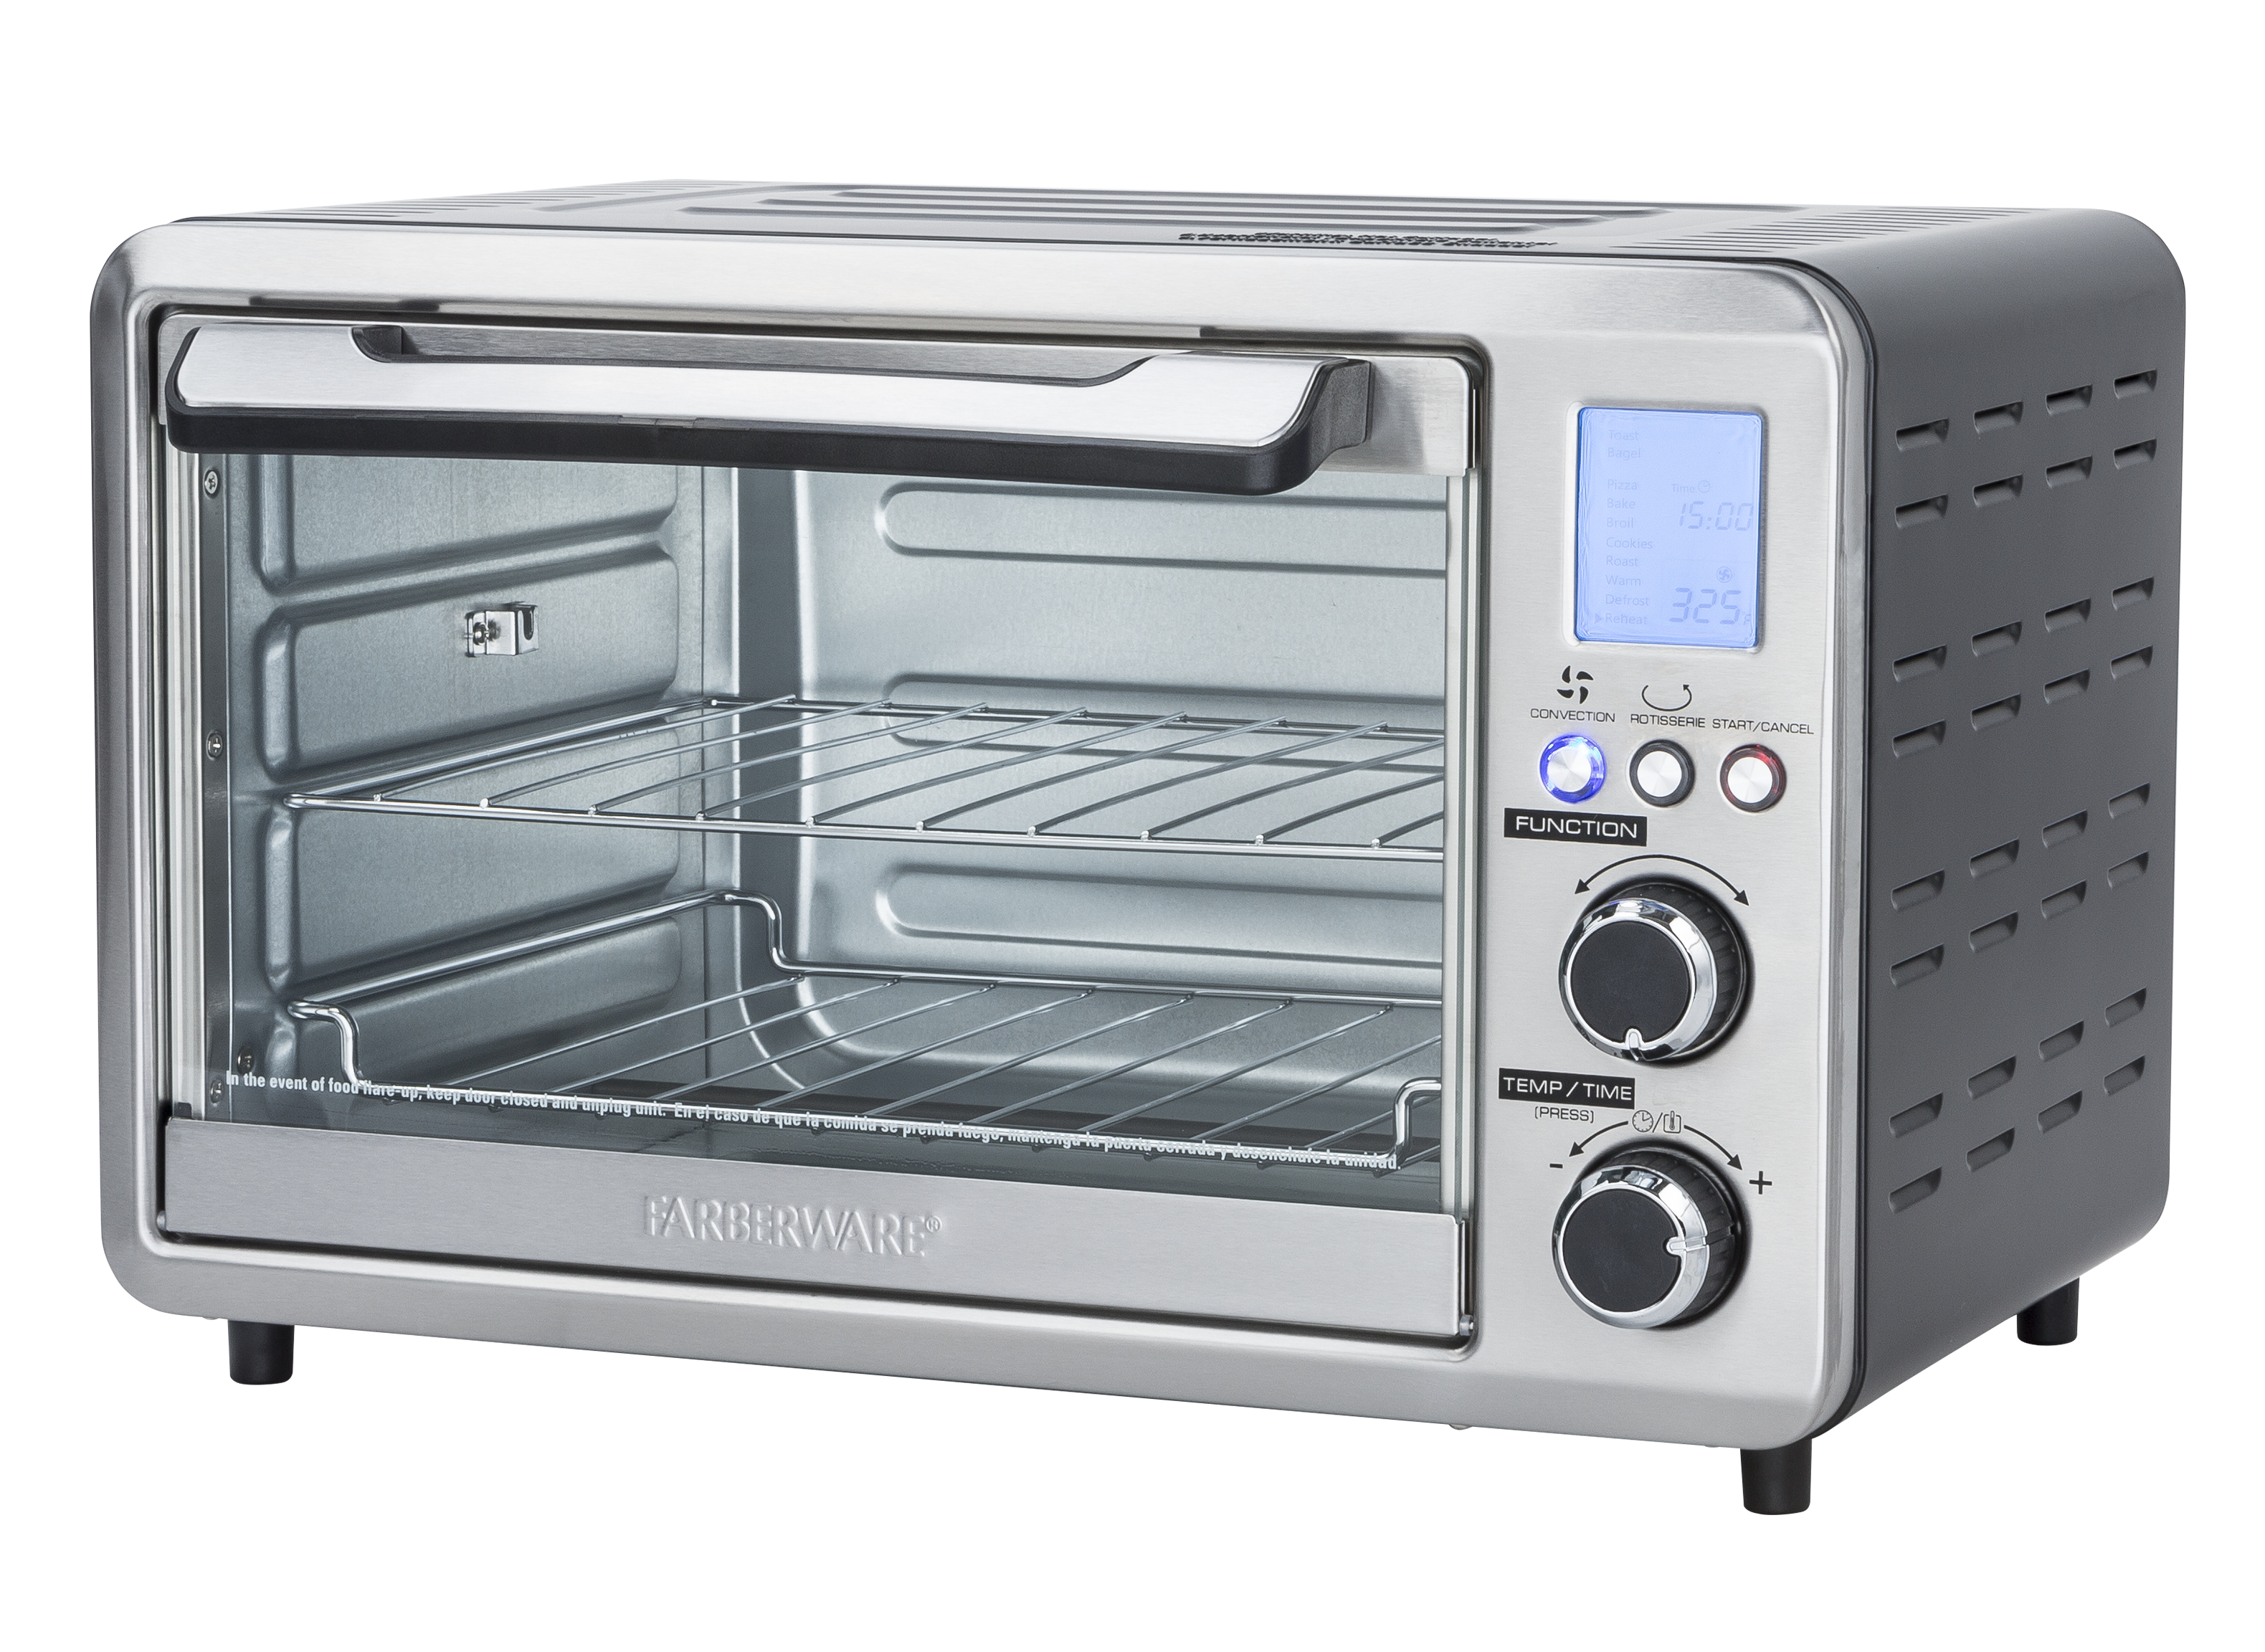 Frigidaire FD6125 220-240 Volt 50 Hz 9 Liter Toaster Oven -   - World Import